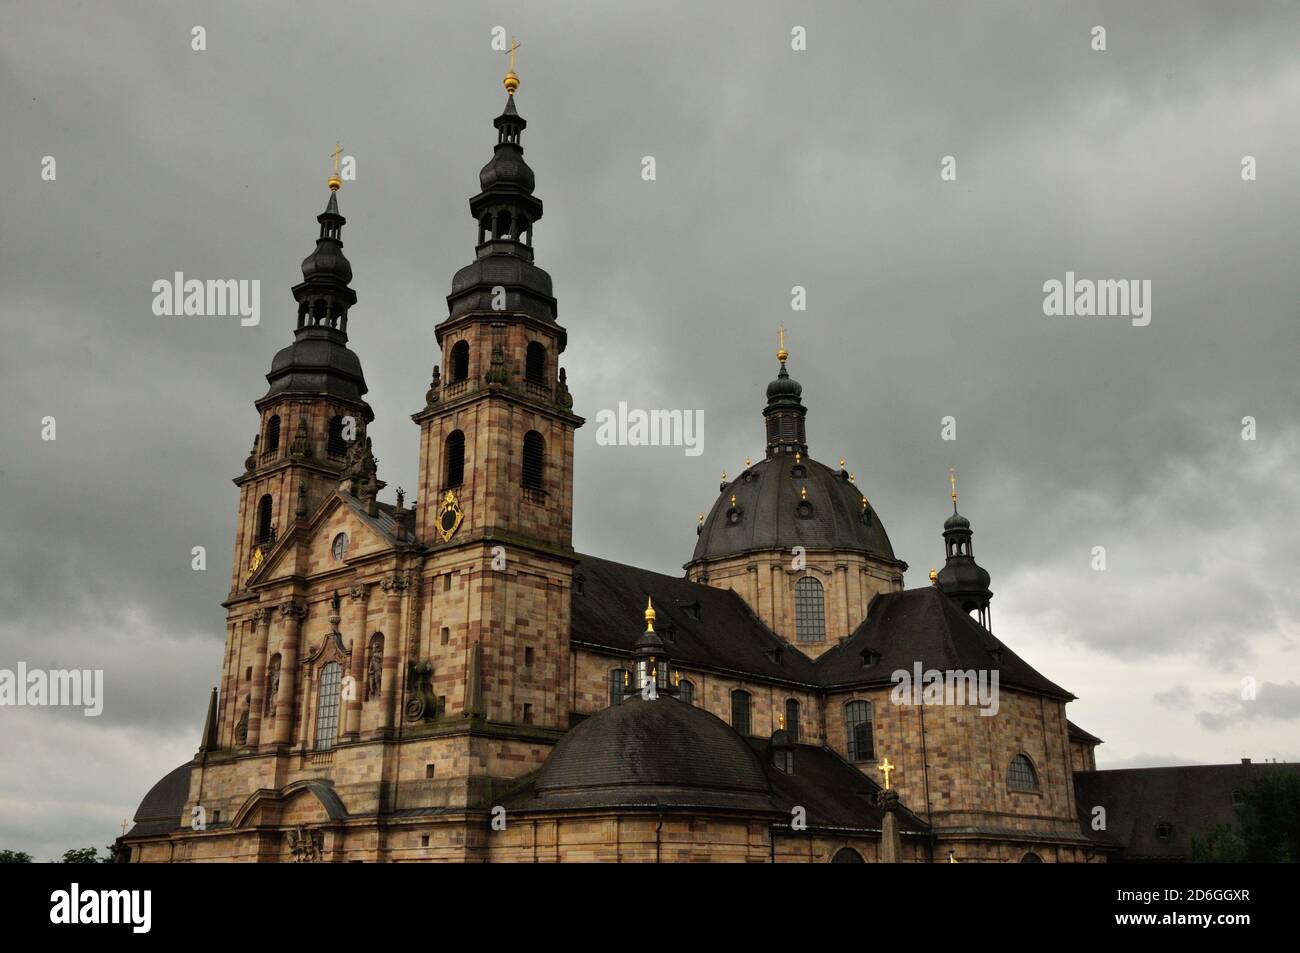 Der barocke Dom zu Fulda ist ein beeindruckendes Zeugnis religiöser Baukunst im Fuldaer Barockviertel. - The baroque cathedral in Fulda is an impressi Stock Photo